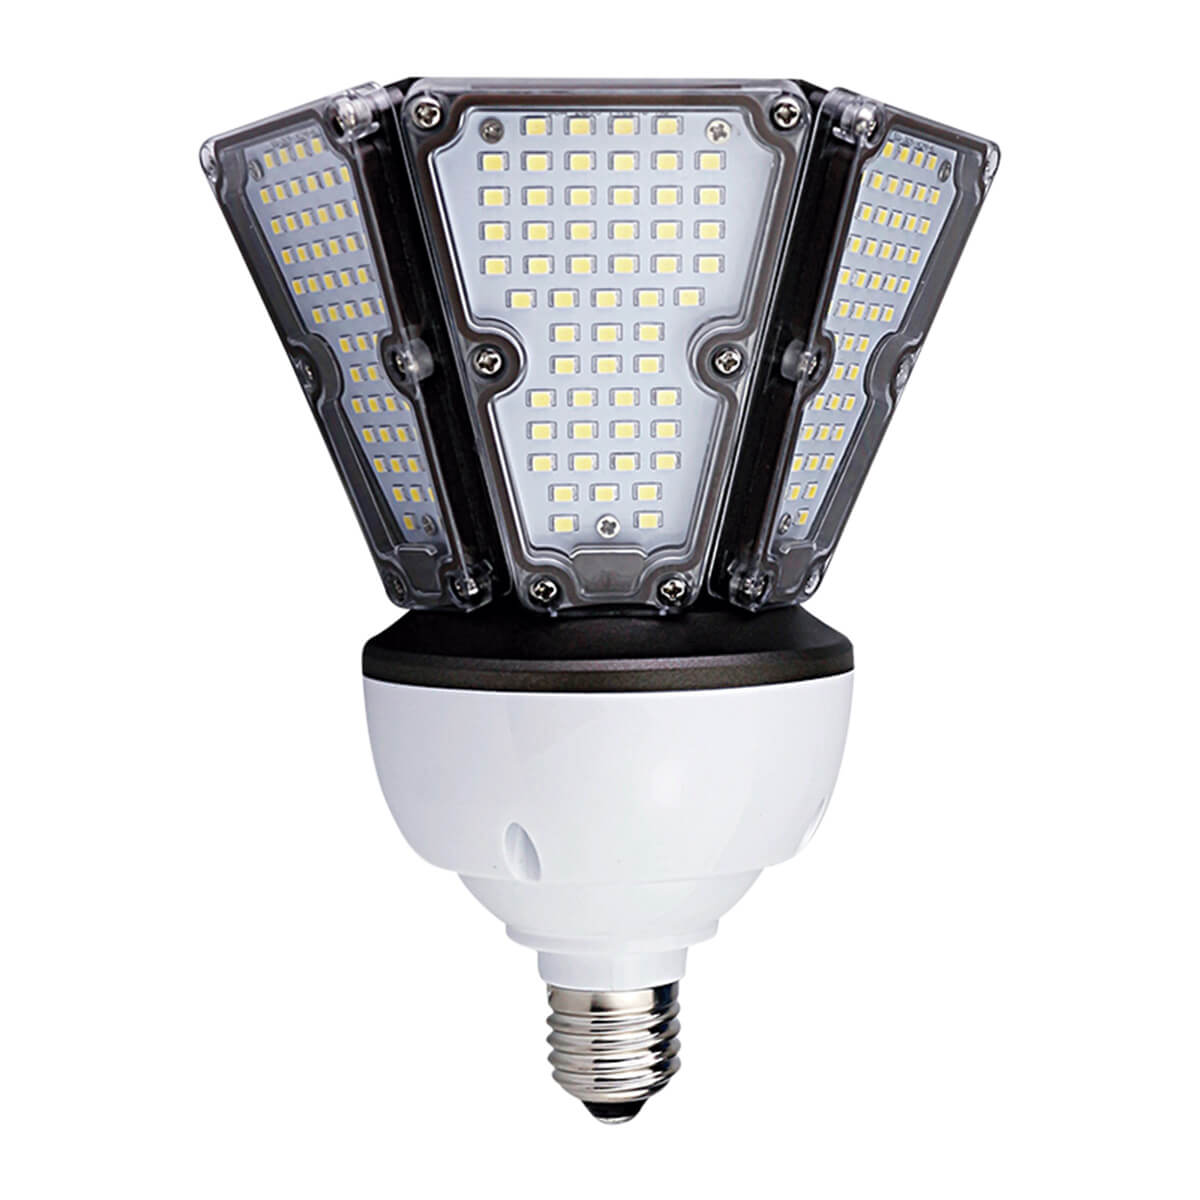 Tendencias 2020 en Iluminación LED  Innlite MX - Iluminación LED,  Luminarias LED, Proyectos de Iluminación